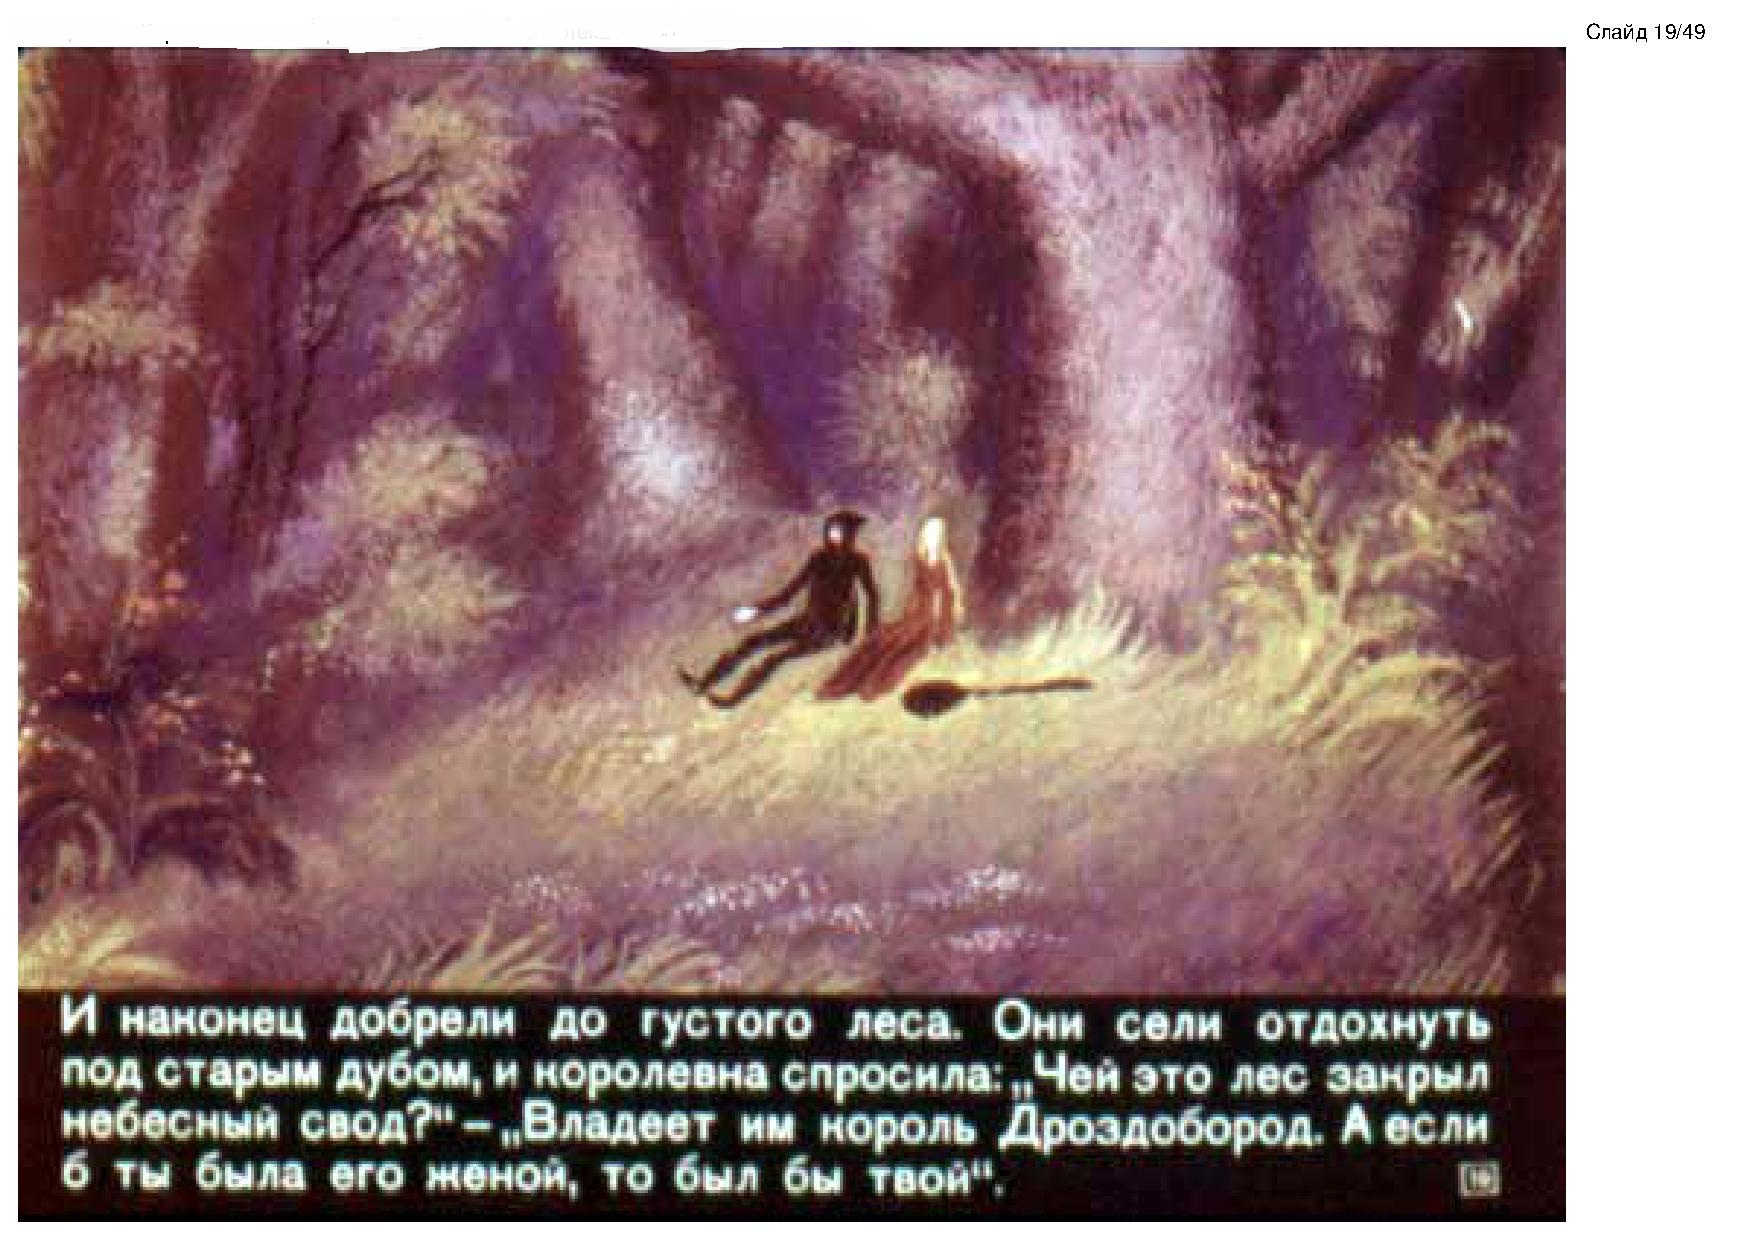 Король-Дроздобород. Иллюстрация № 19